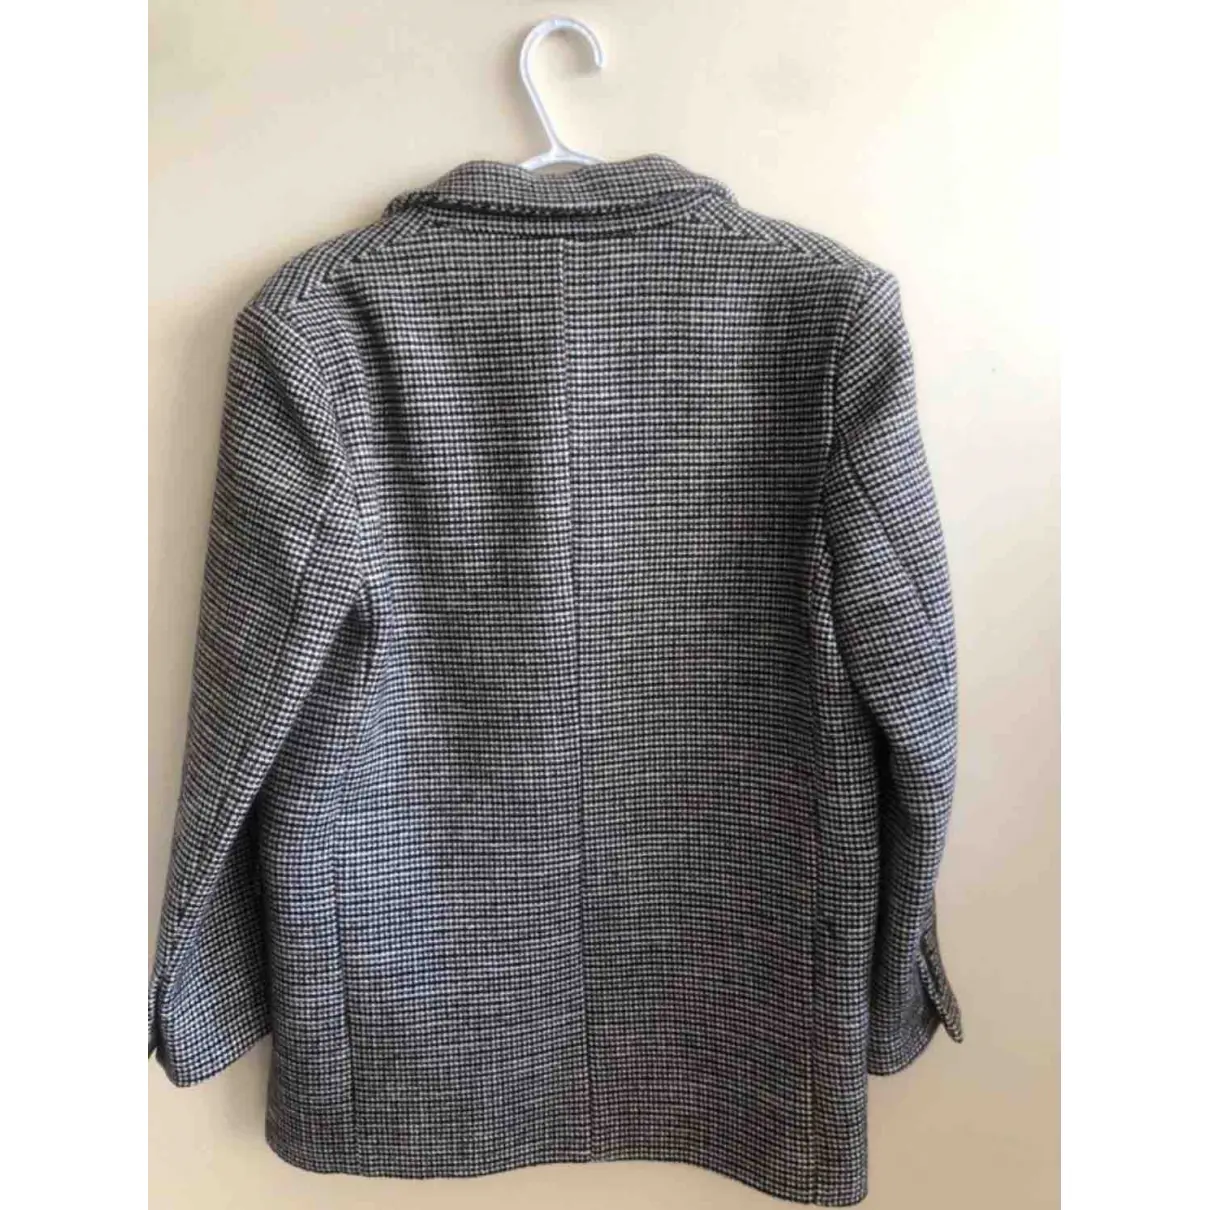 Buy Maje Fall Winter 2019 wool blazer online